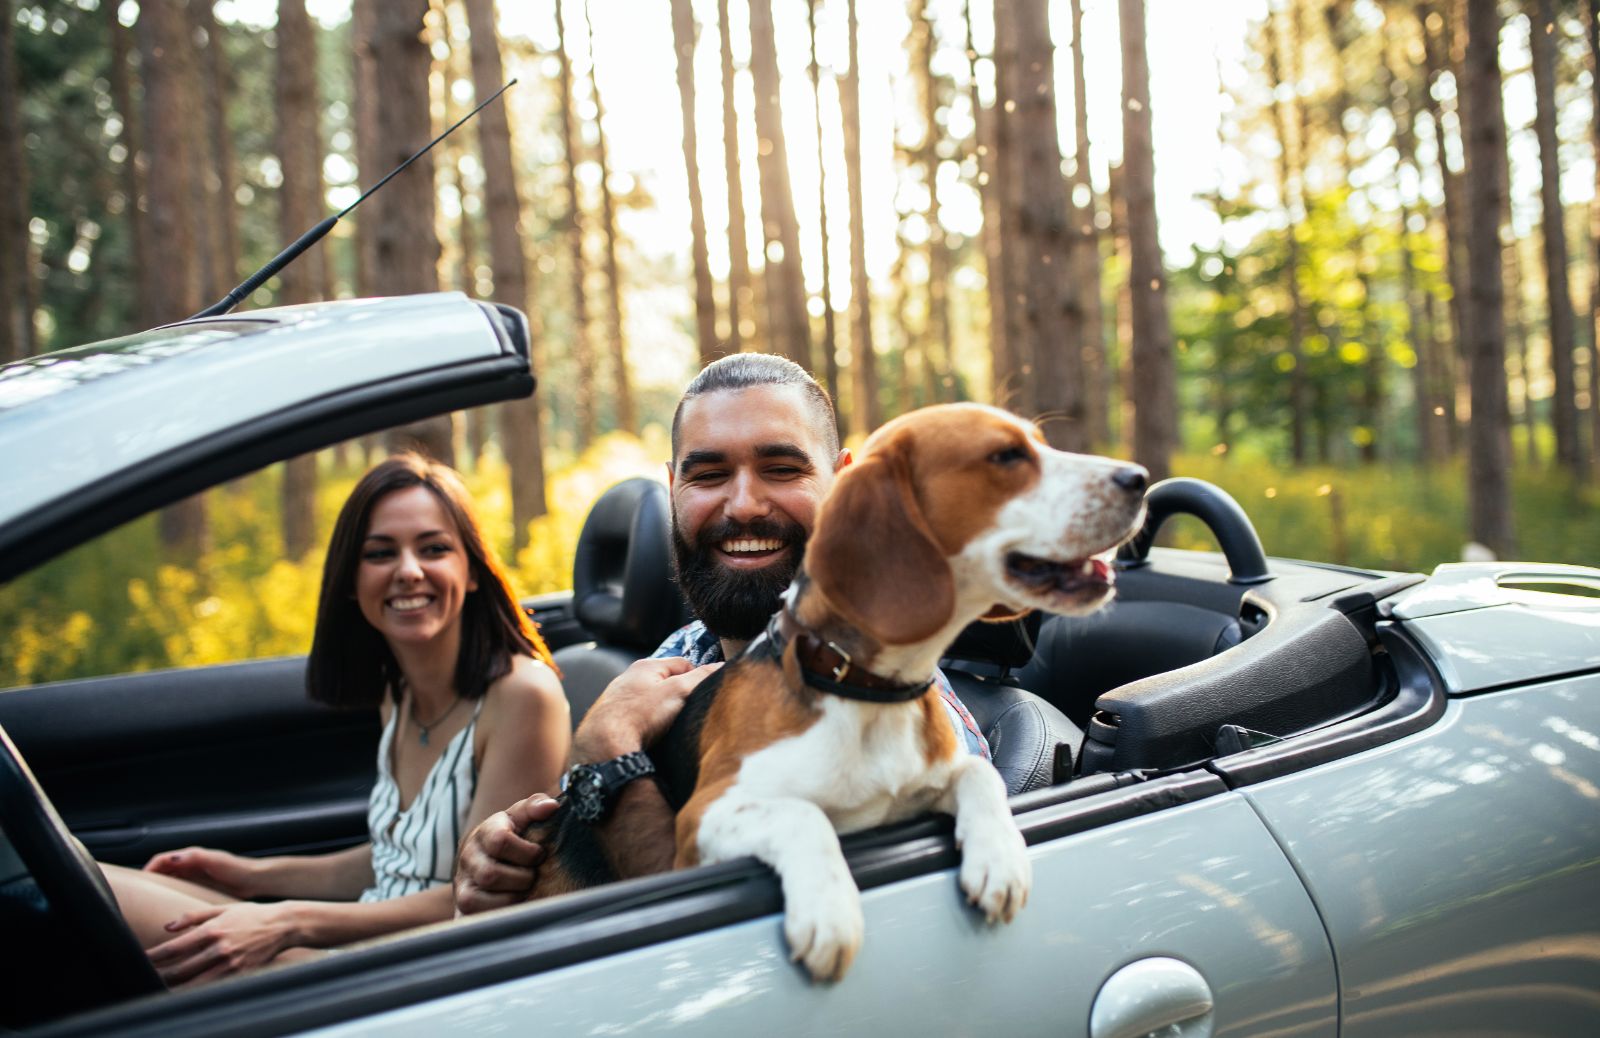 Vacanze con il cane: destinazioni, regole, precauzioni e consigli